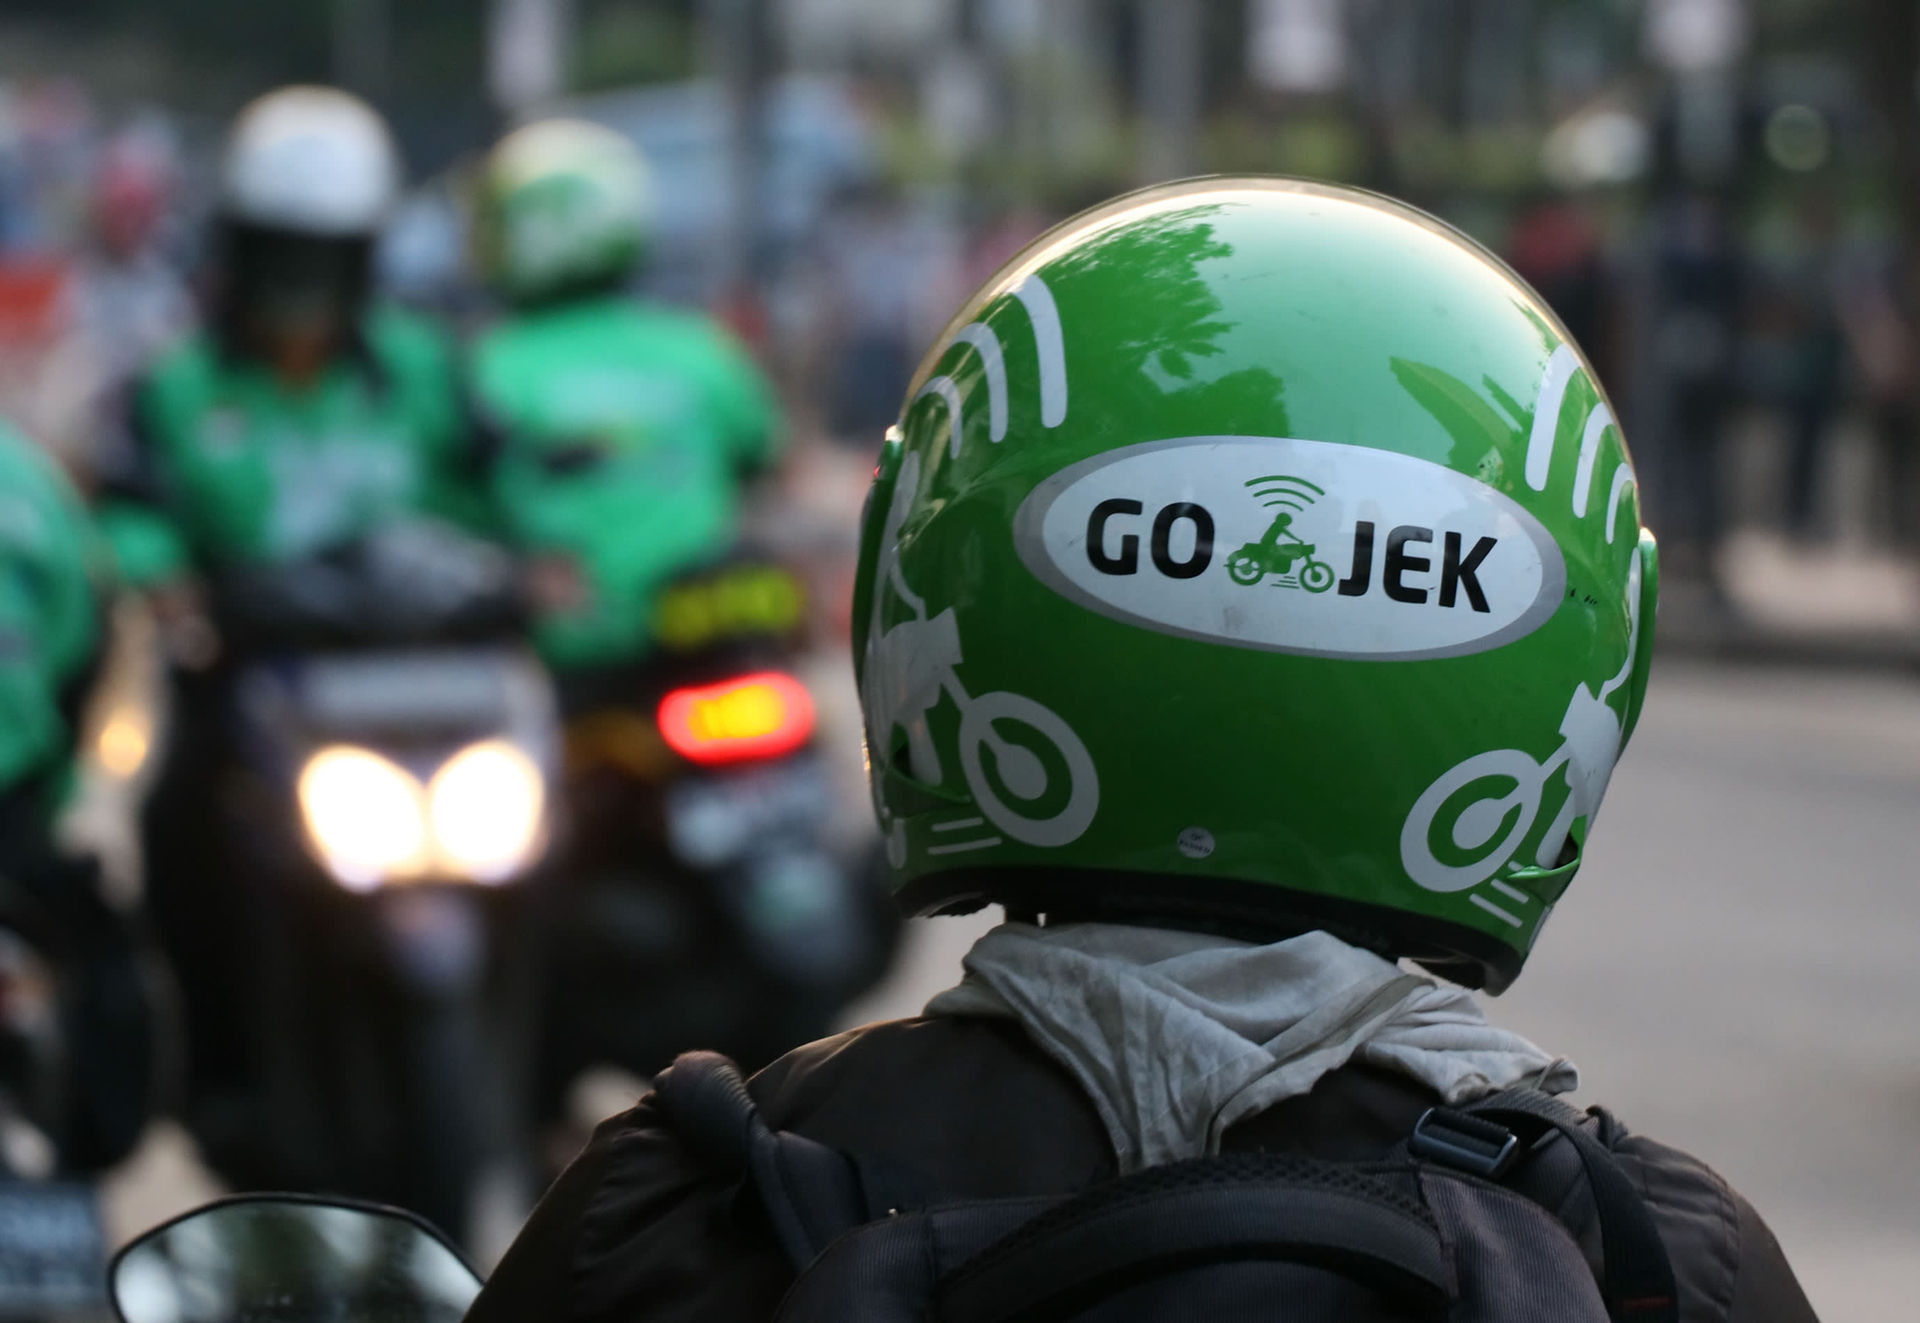 Starup Go-Jek được ngân hàng lớn nhất Thái Lan rót vốn đầu tư